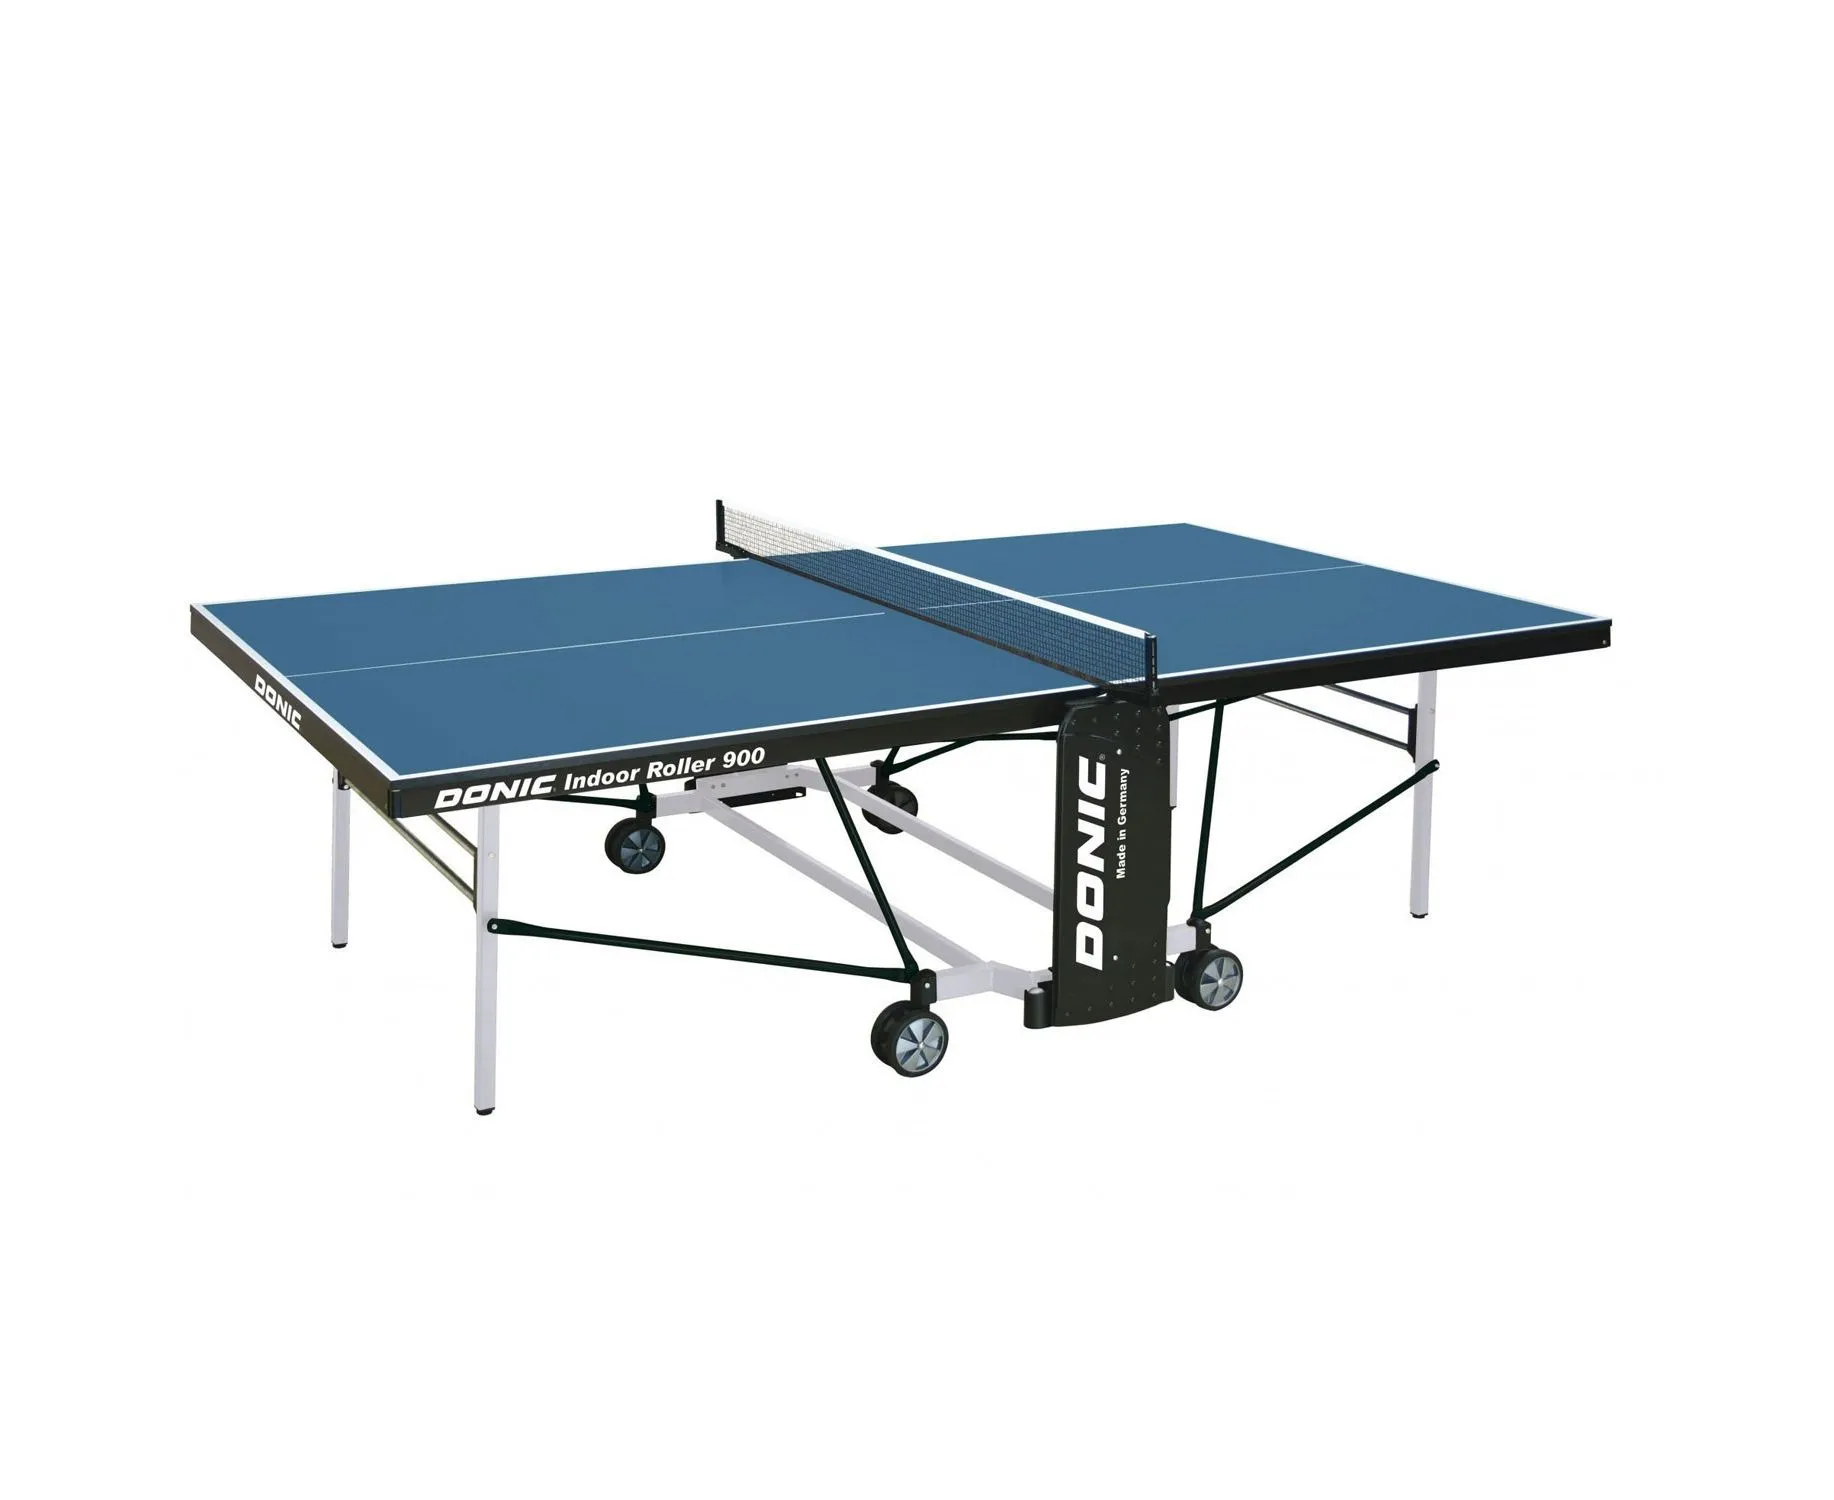 Теннисный стол DONIC INDOOR ROLLER 900 - 2 